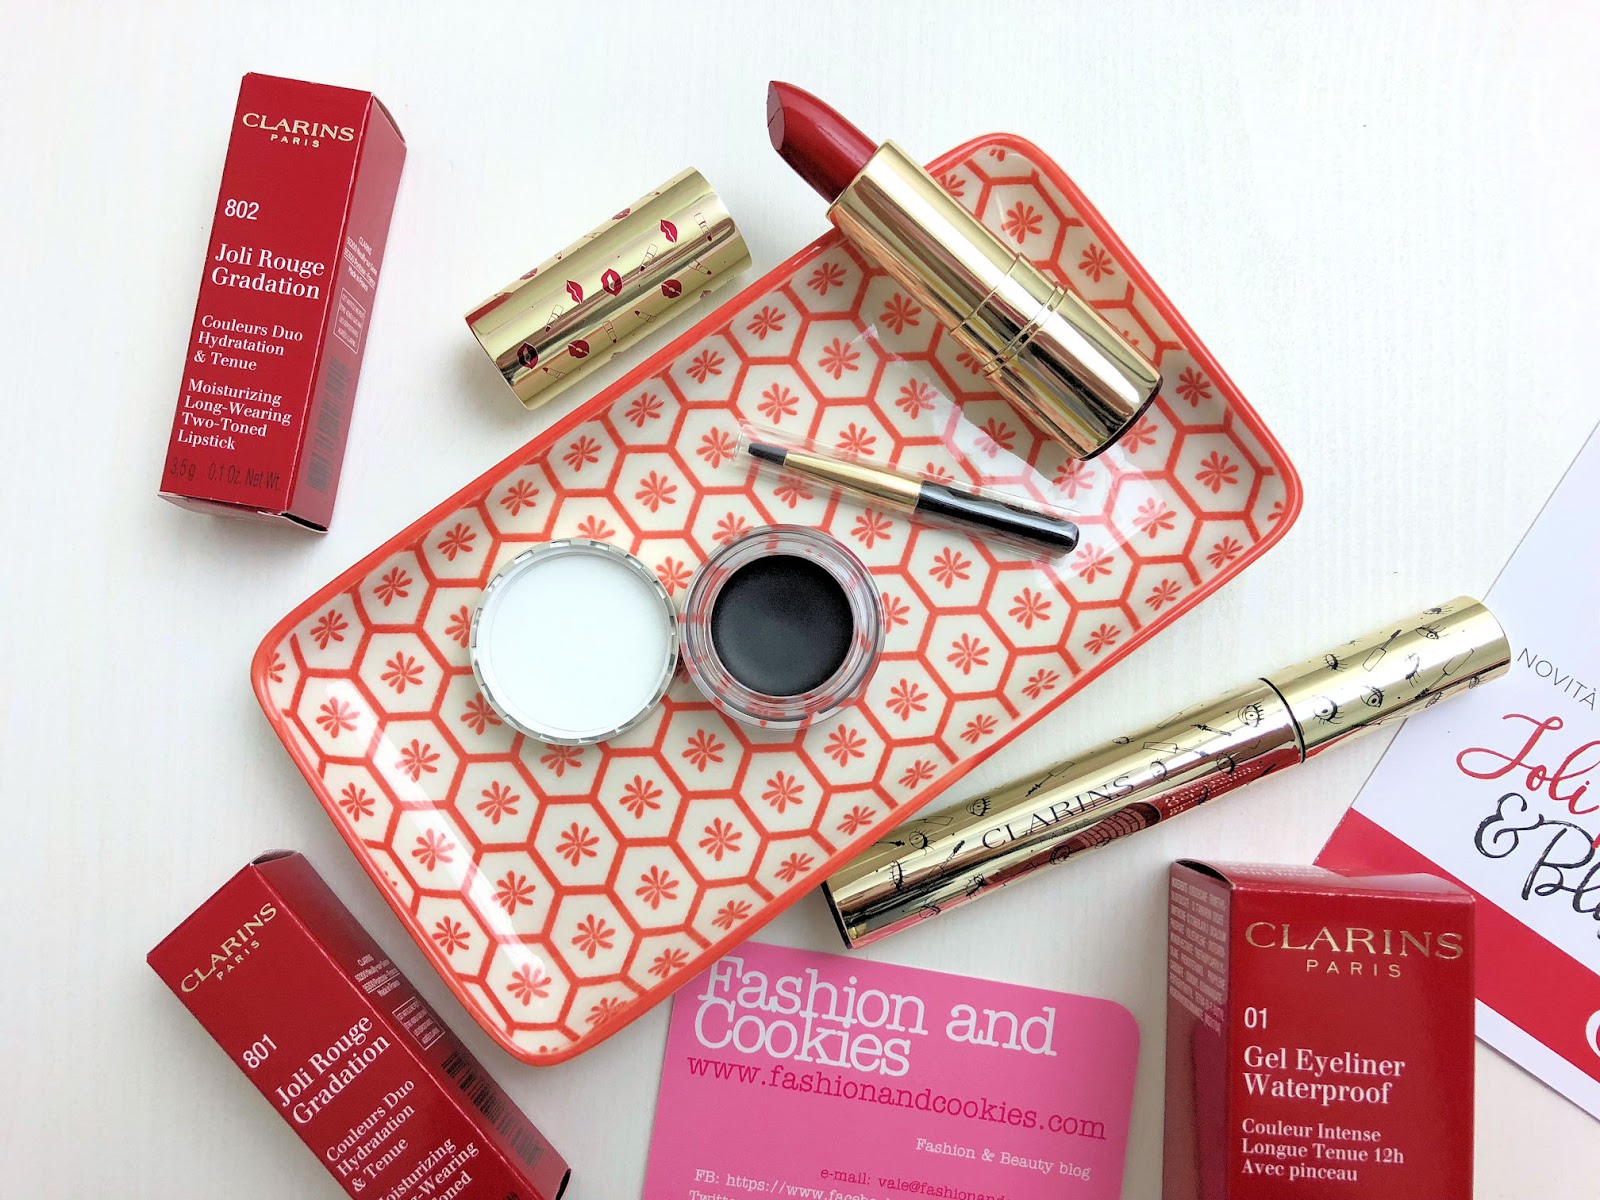 Clarins Joli Rouge & Black collezione makeup edizione limitata per l'Autunno su Fashion and Cookies beauty blog, beauty blogger